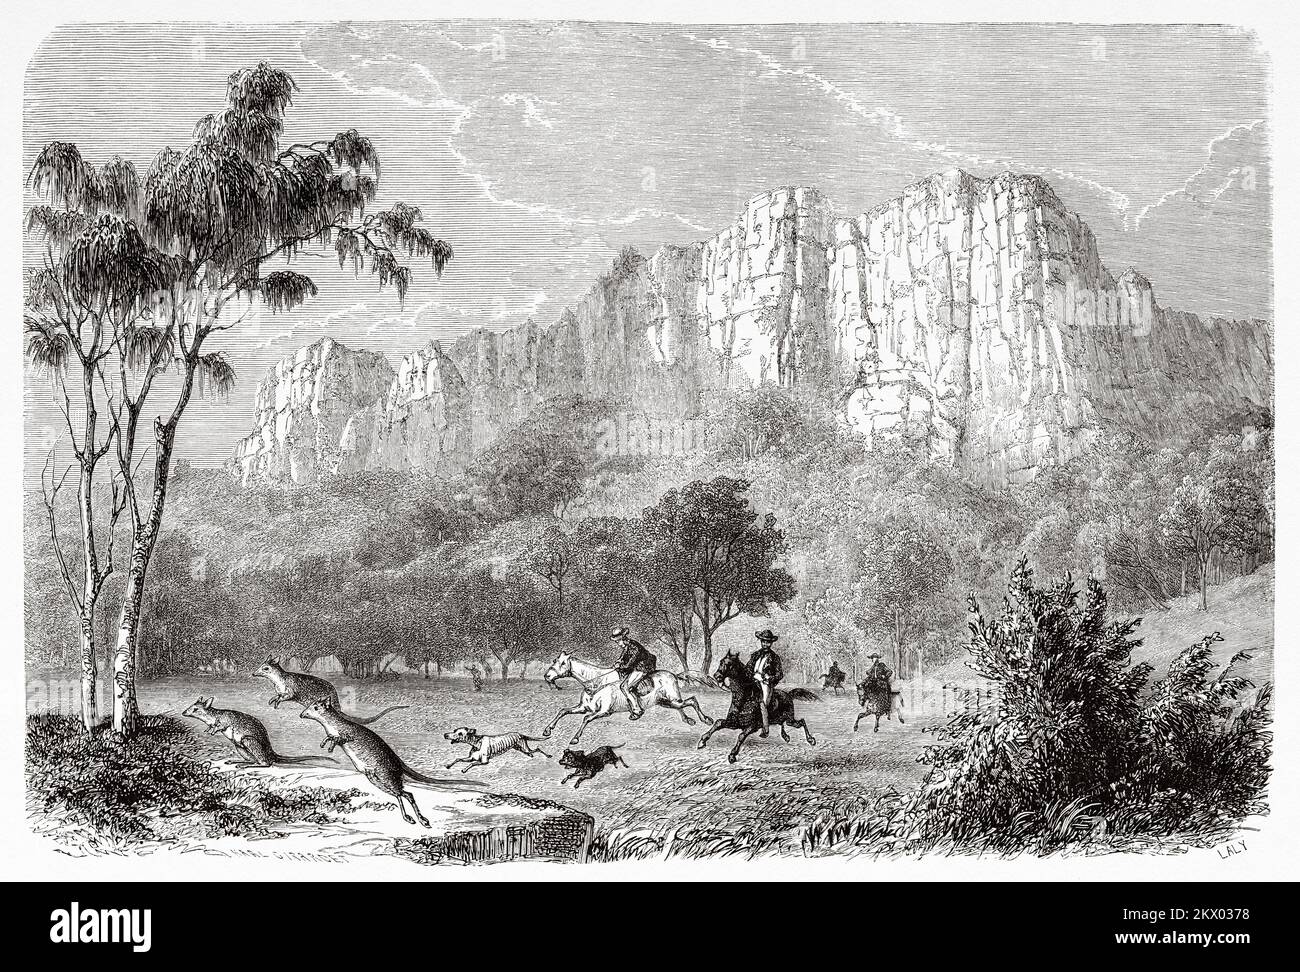 Chasse au kangourou dans les États australiens de Victoria, en Australie. Souvenir d'un squat français en Australie par H. de Castella 1854-1856 Banque D'Images